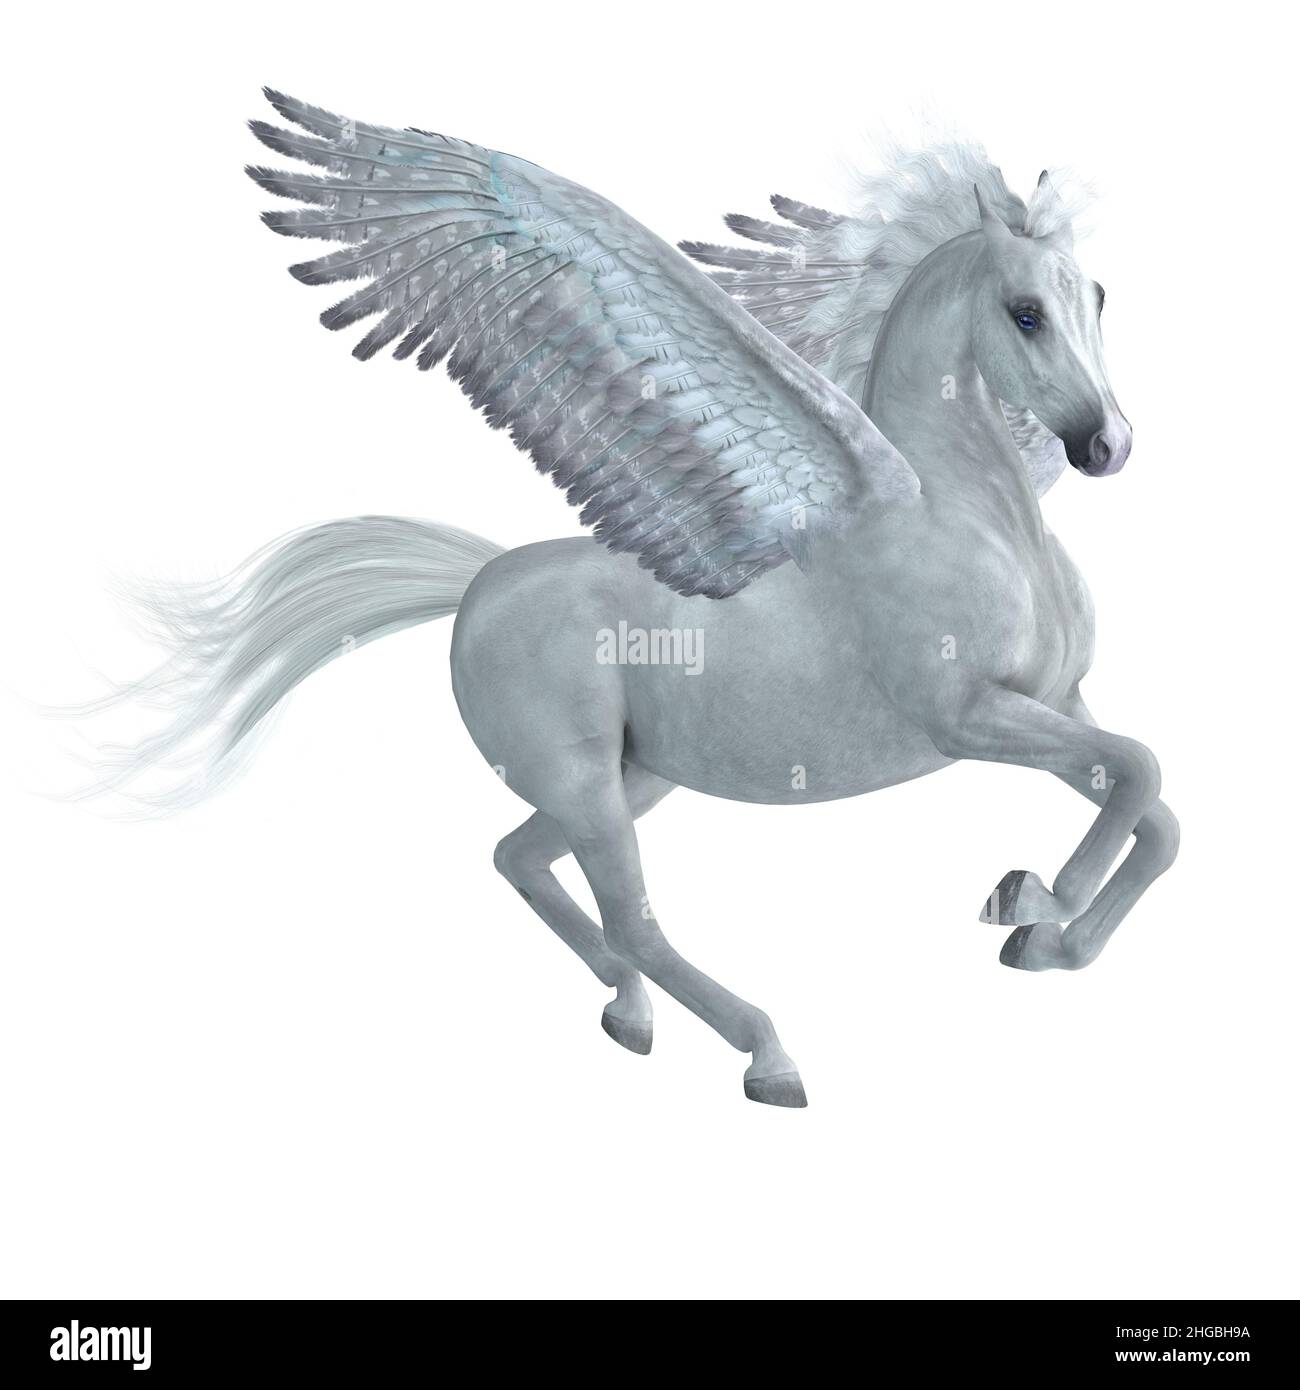 Ein wunderschöner weißer Pegasus-Hengst, ein legendäres mythisches Pferd mit Flügeln, hebt sich in den Himmel. Stockfoto